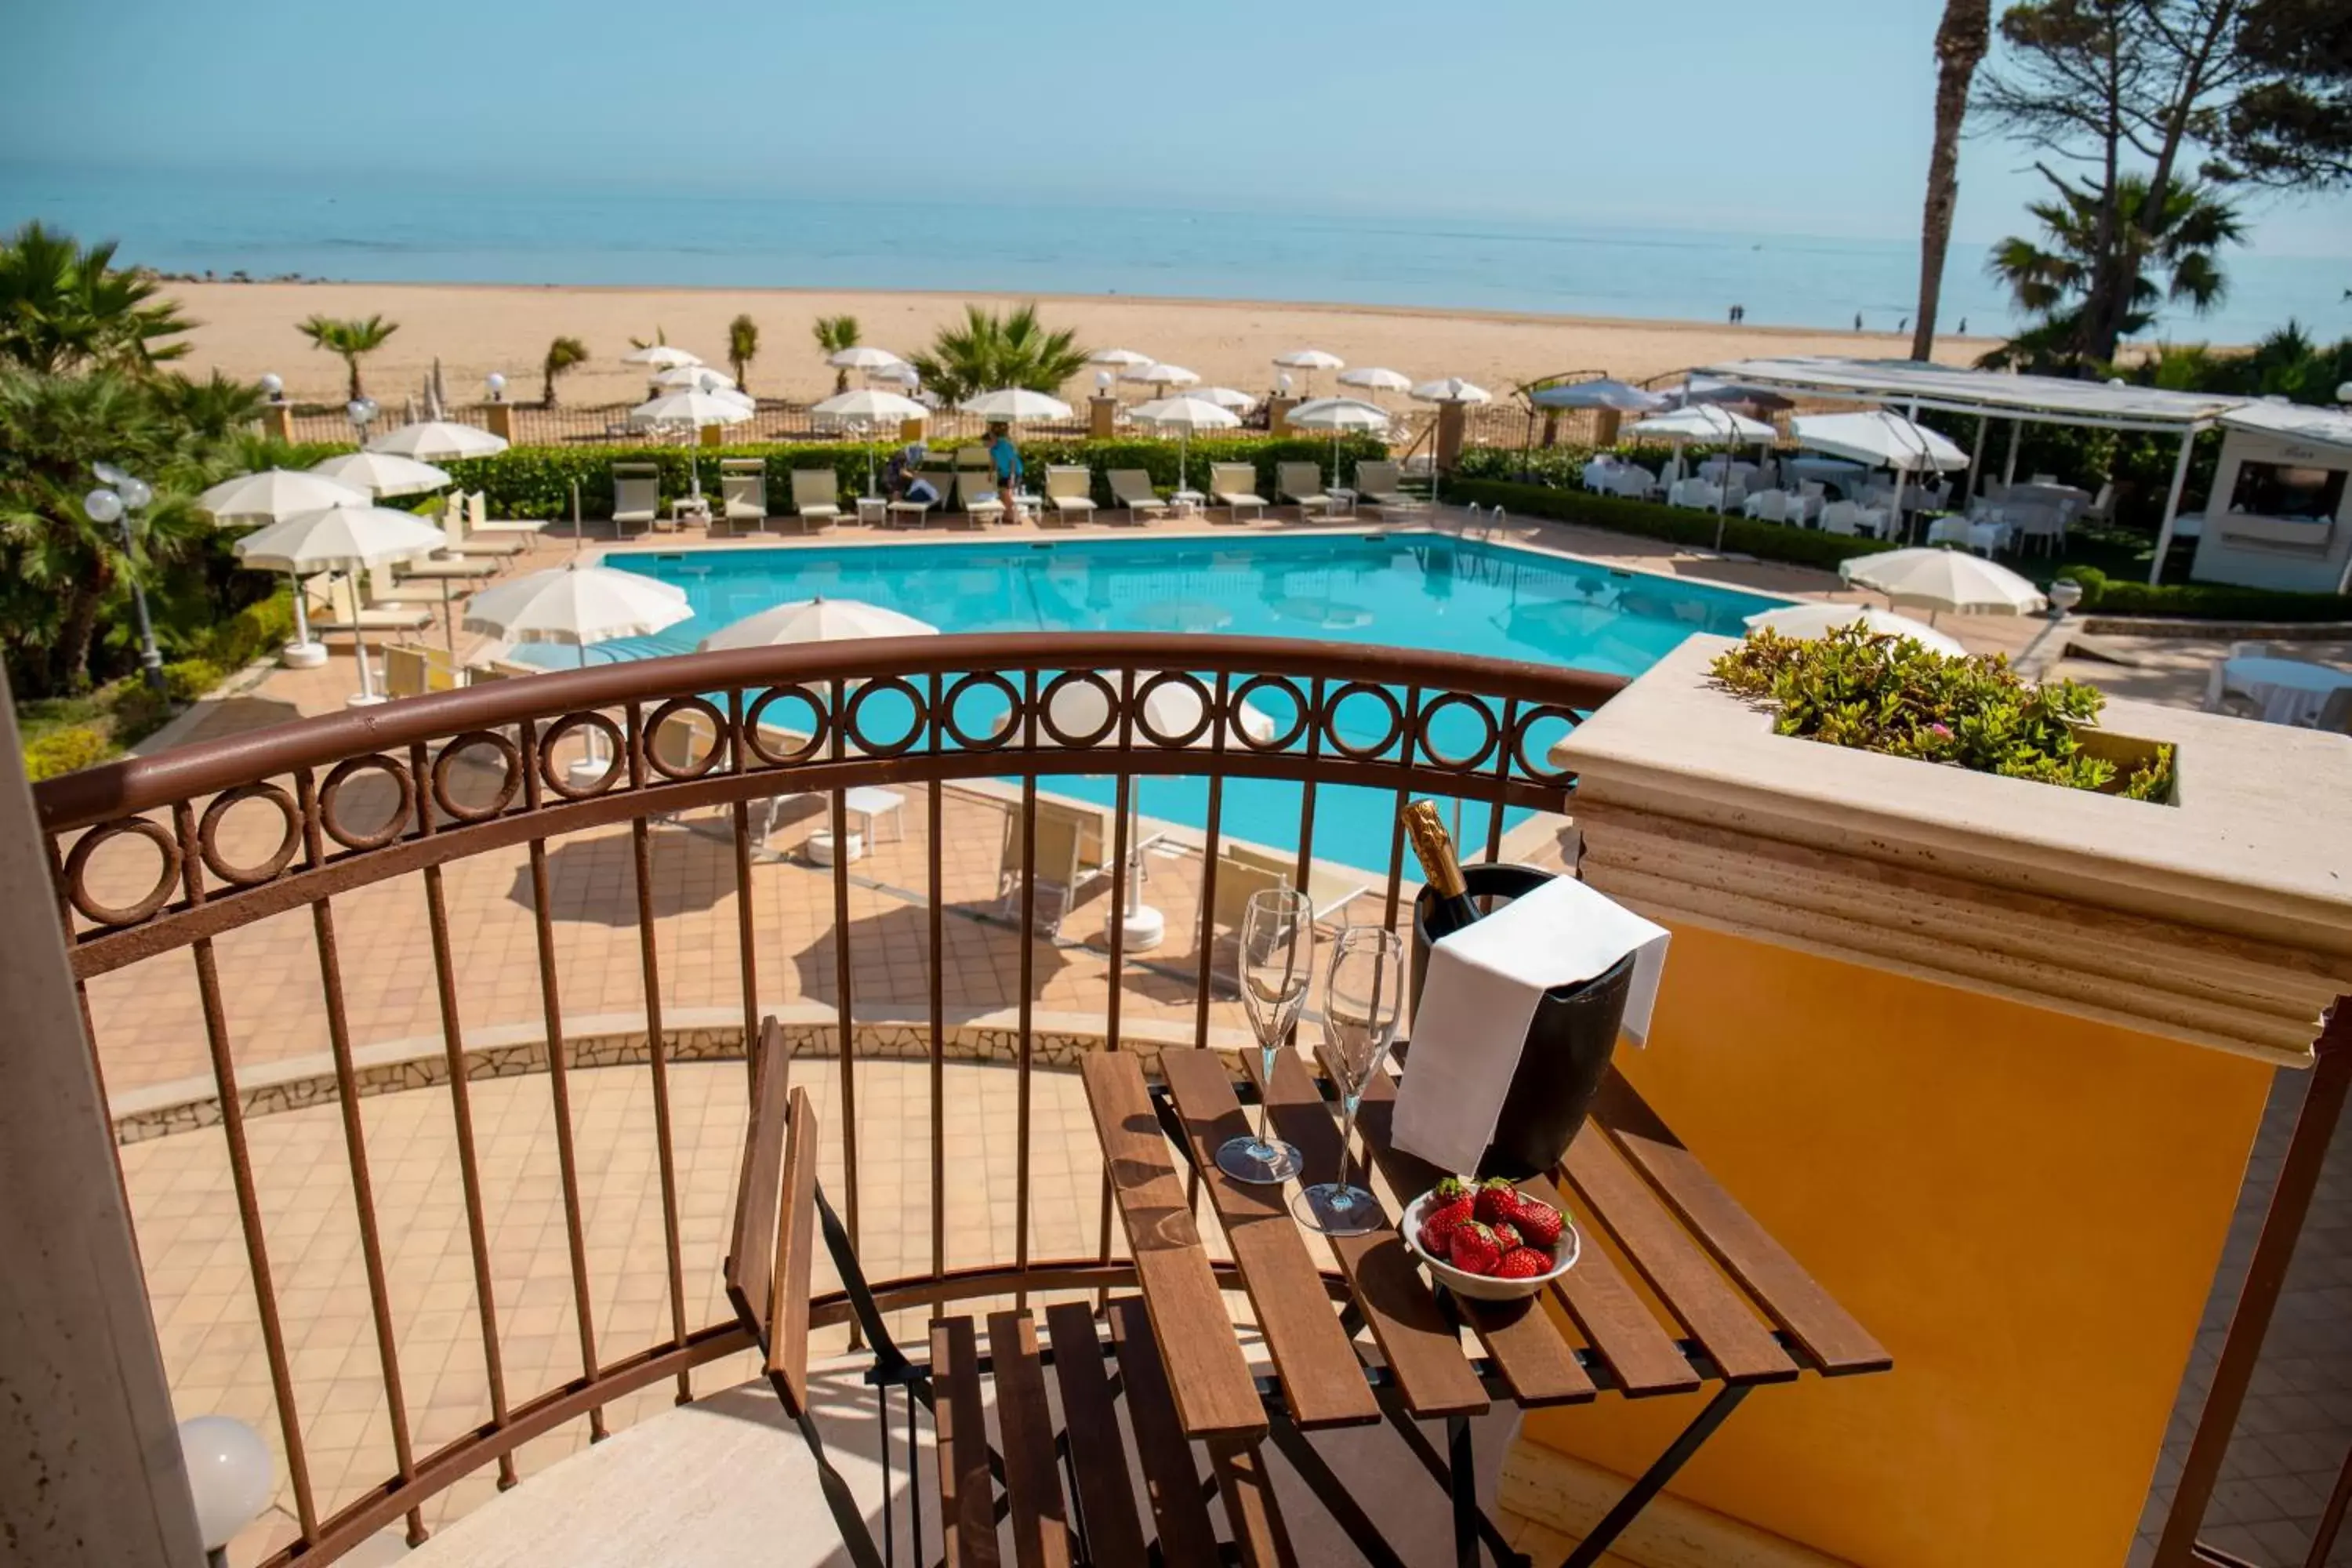 Pool View in Hotel Villa Romana